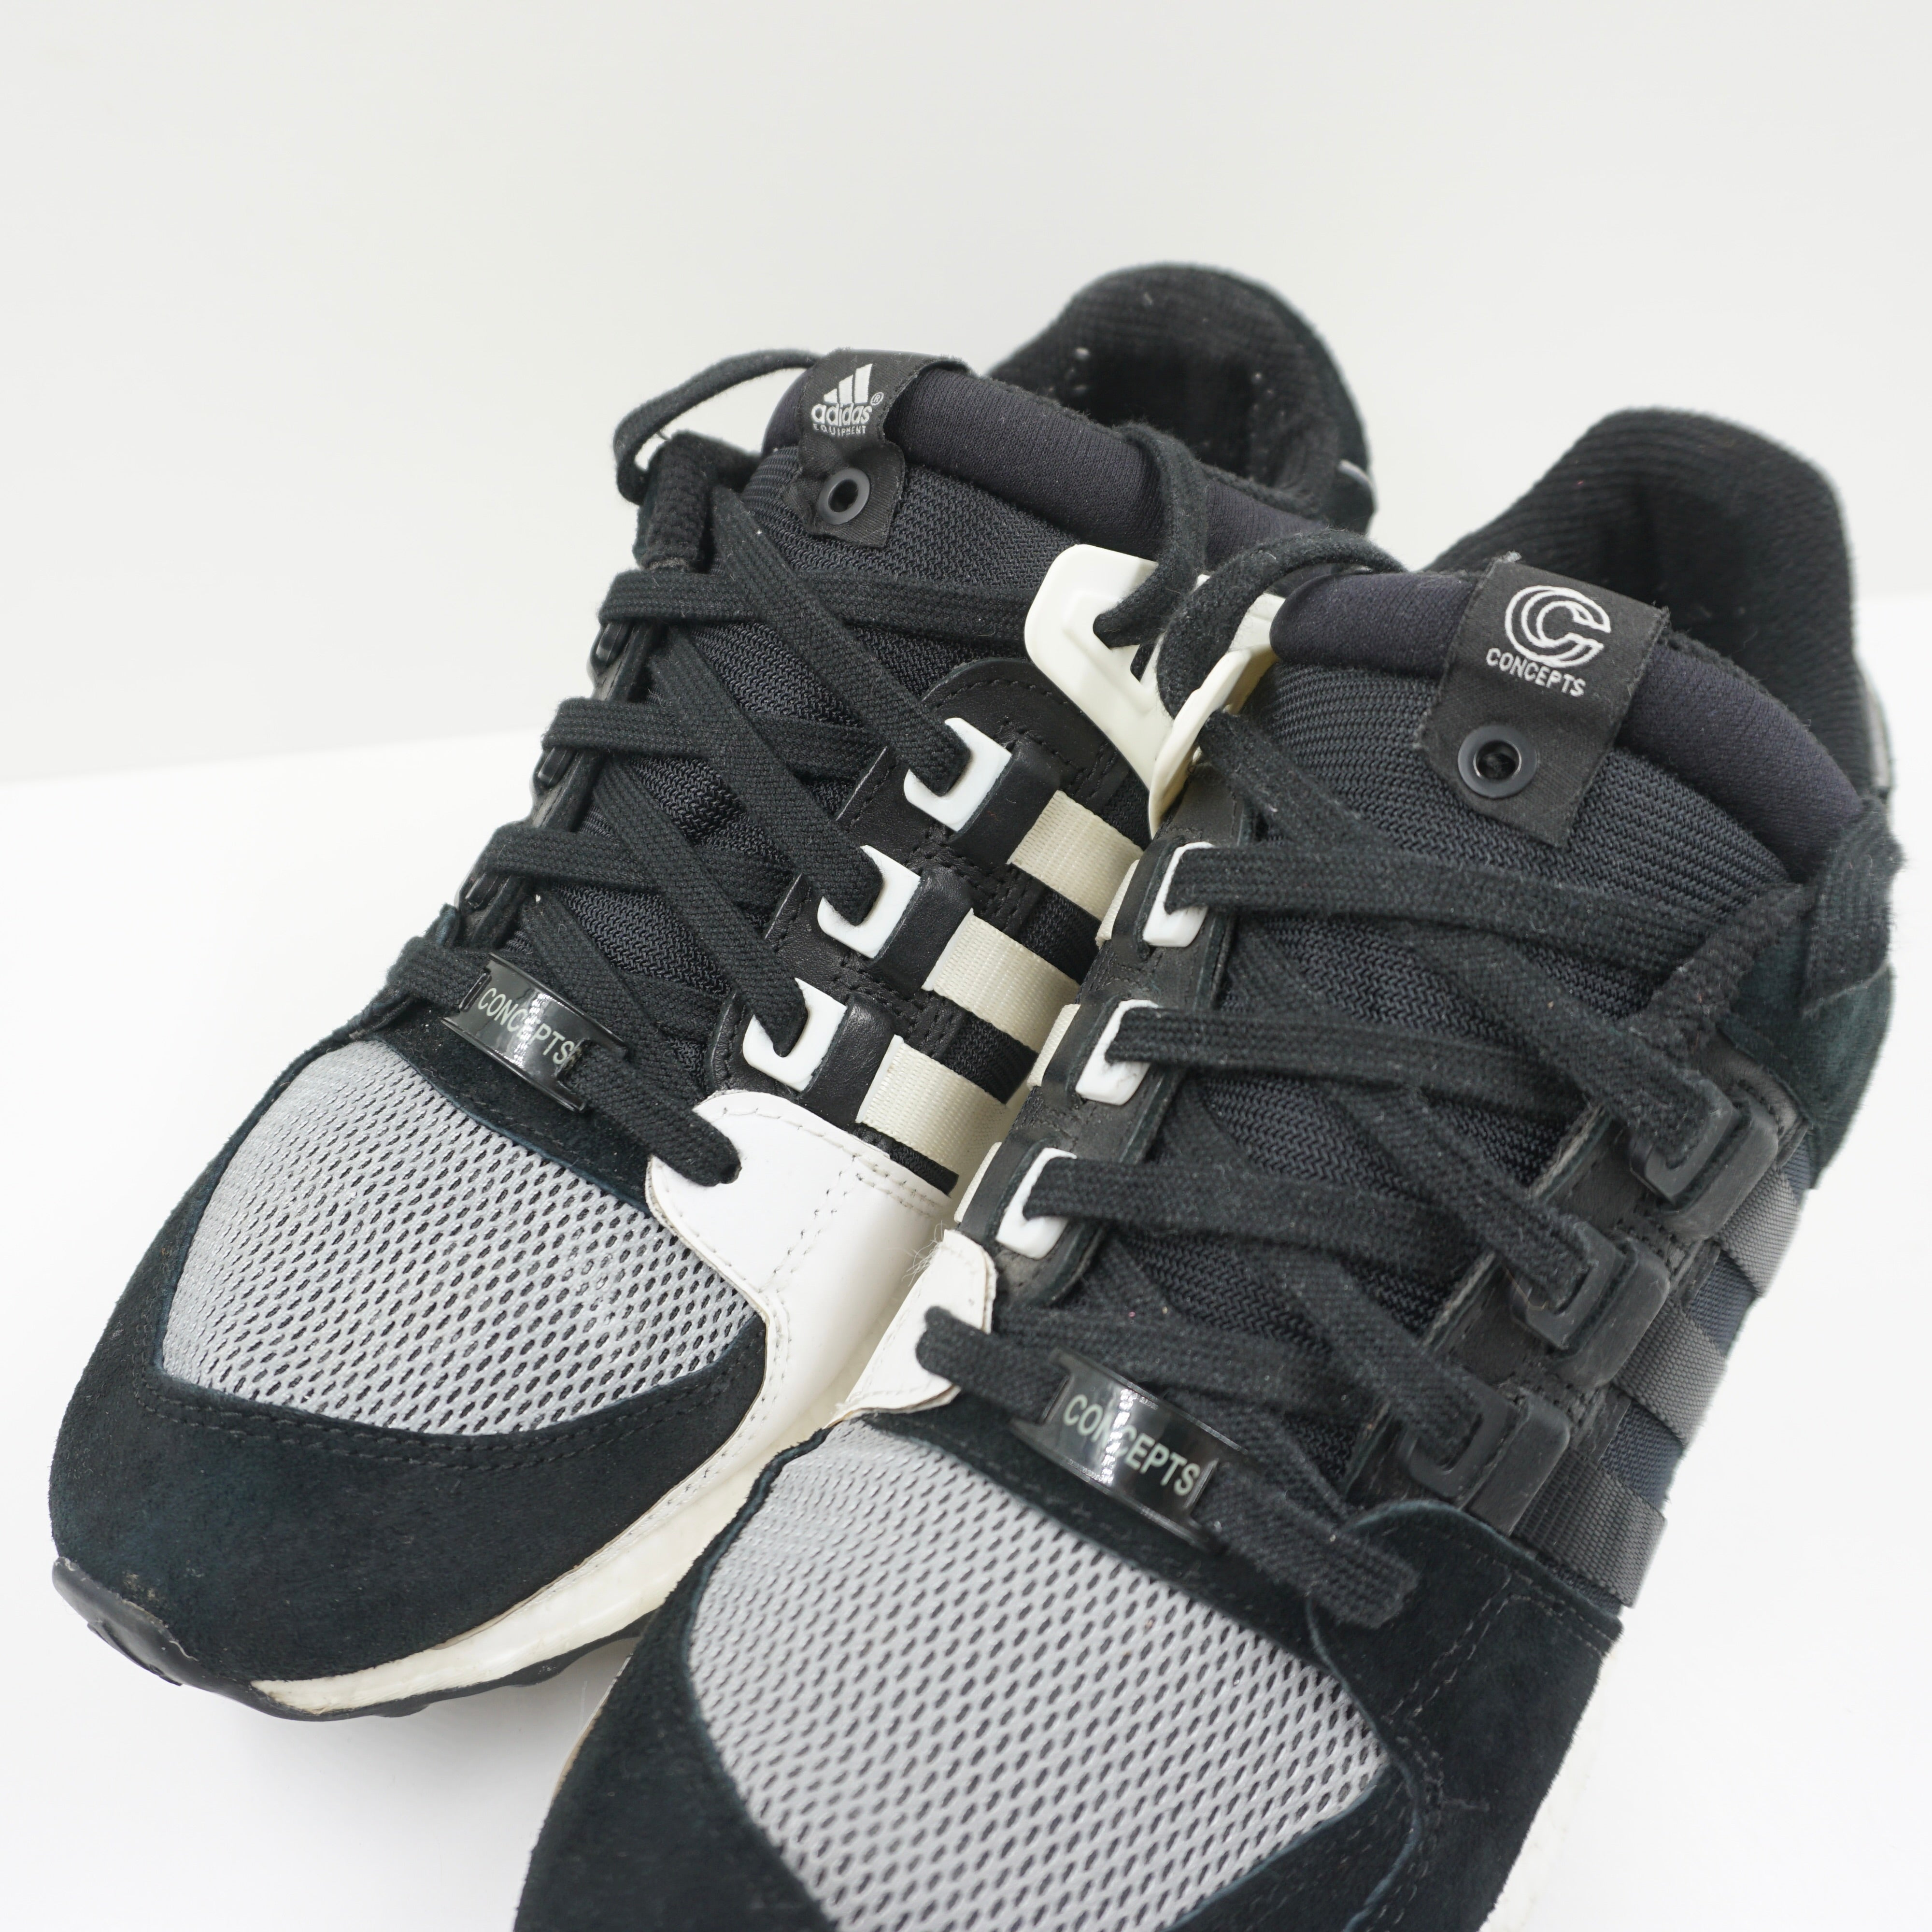 Adidas Ultra Boost EQT Support 93/16 Concepts Black